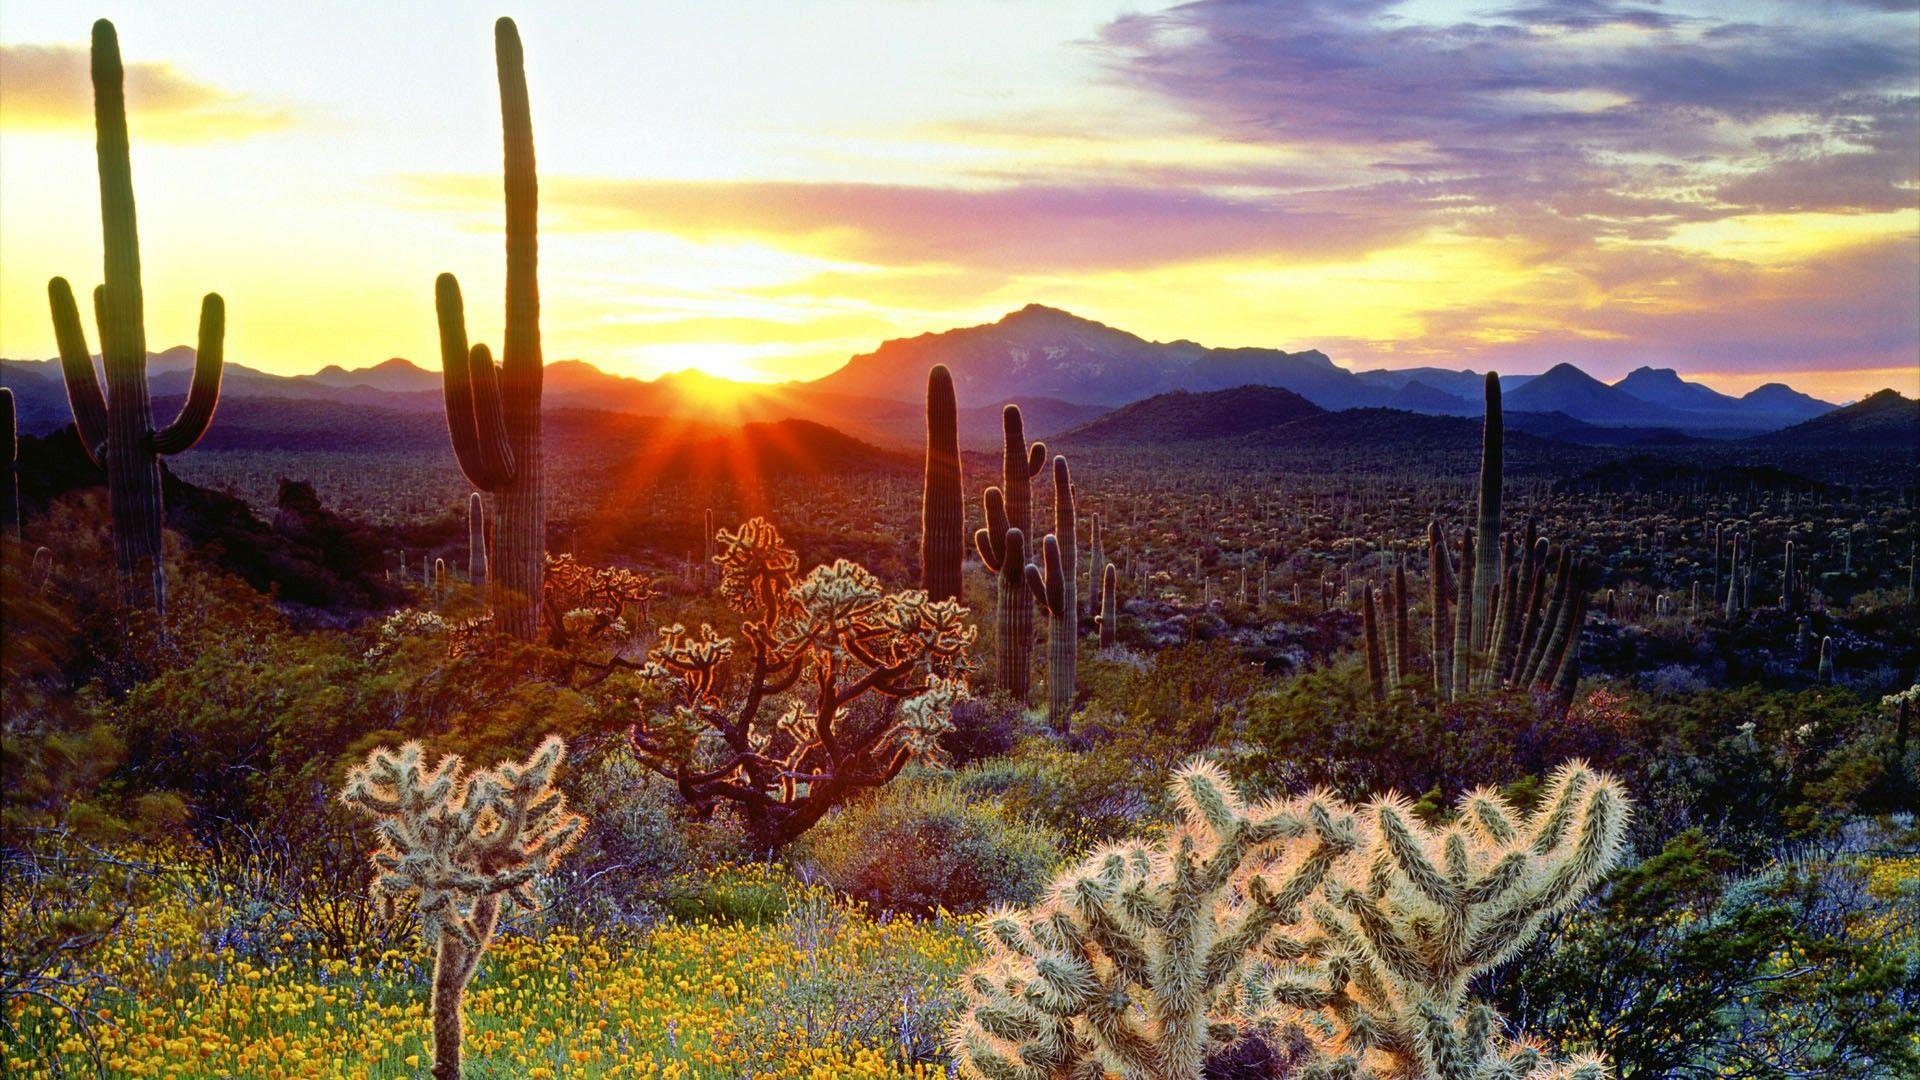 Sa mạc Sonoran - một mảnh đất hoang sơ với những khung cảnh tuyệt đẹp vô cùng độc đáo. Cảm nhận được sự yên tĩnh của sa mạc, từ những cát vàng đến những đỉnh núi cao trước khi nhìn thấy được bầu trời rực rỡ khi hoàng hôn buông xuống.